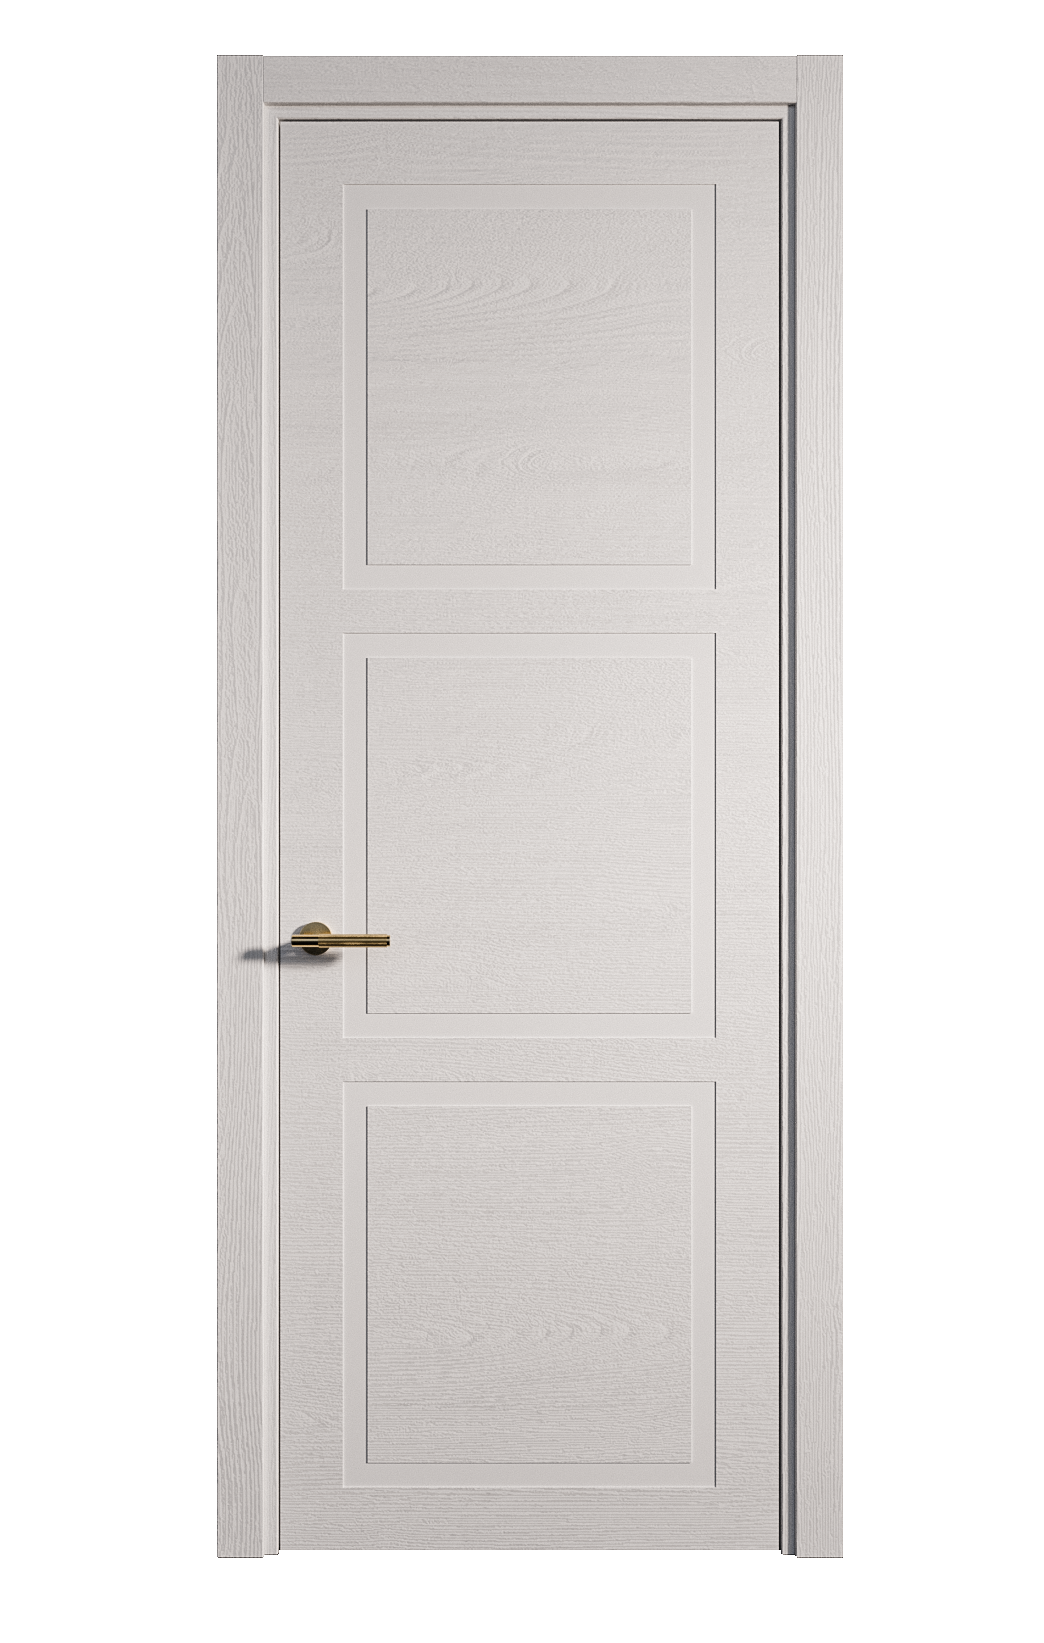 Межкомнатная дверь Бостон-3 глухая эмаль ral 9003 24486